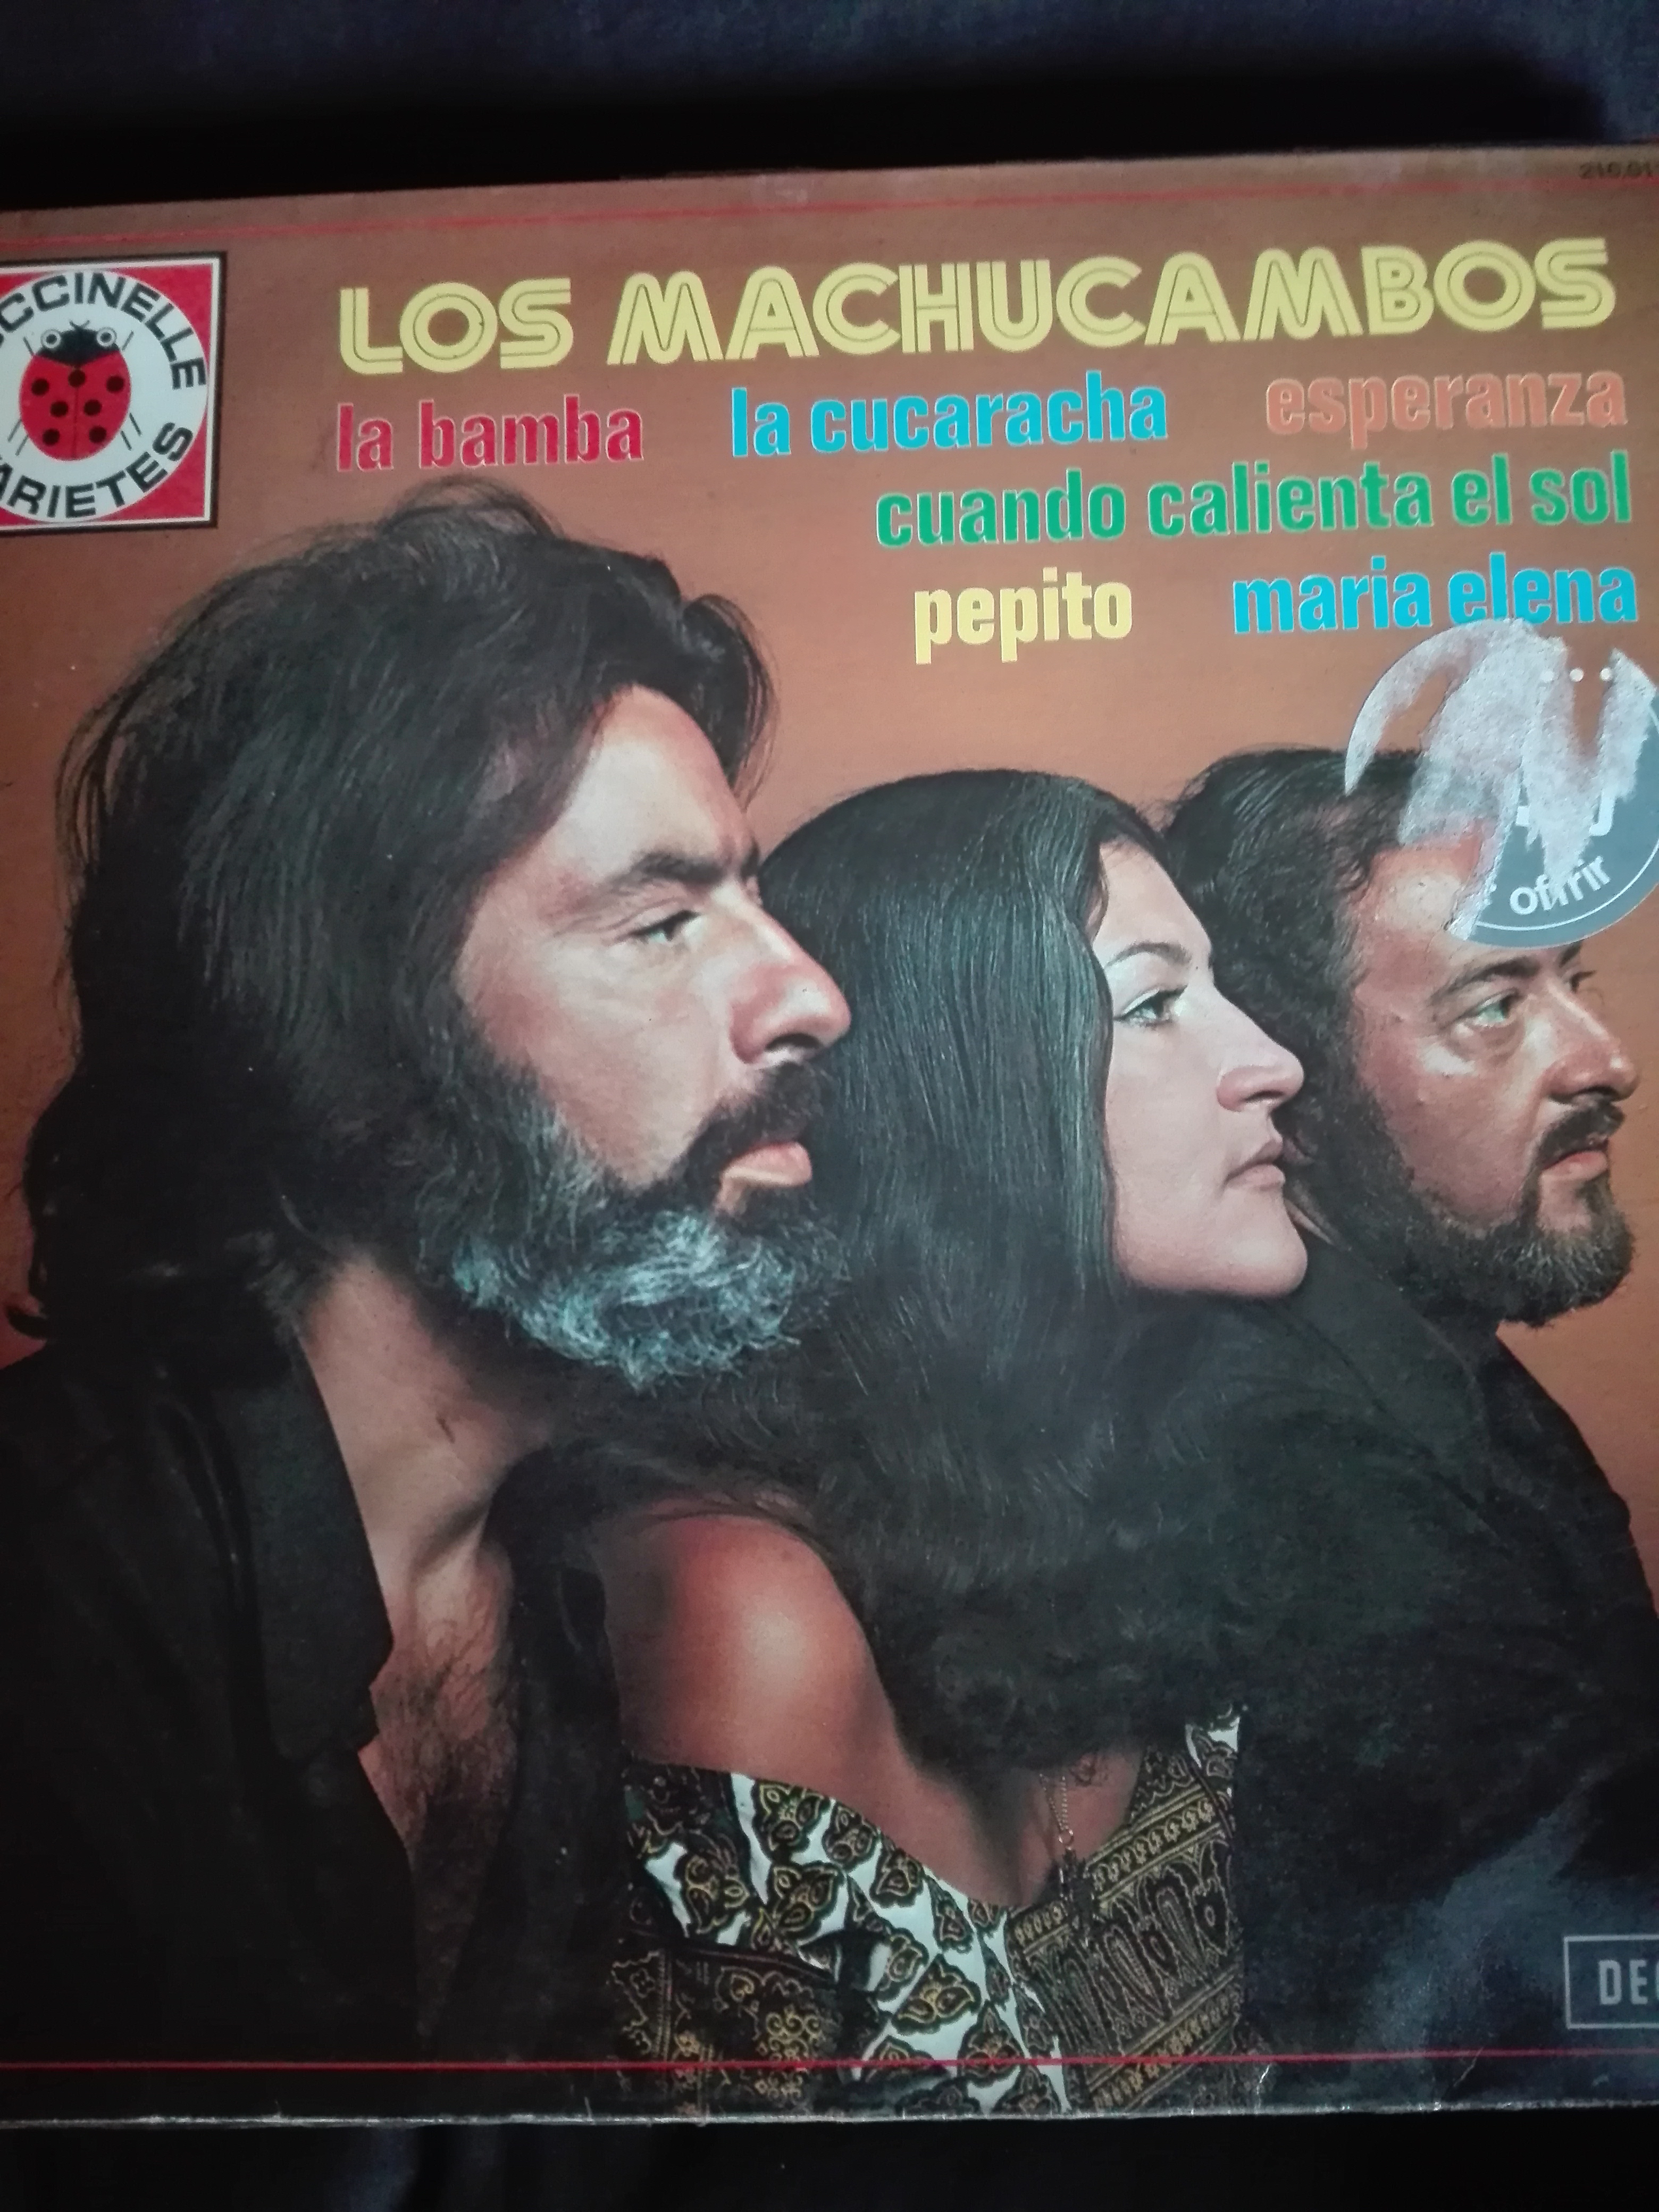 Acheter disque vinyle Los Machucambos Los machucambos a vendre